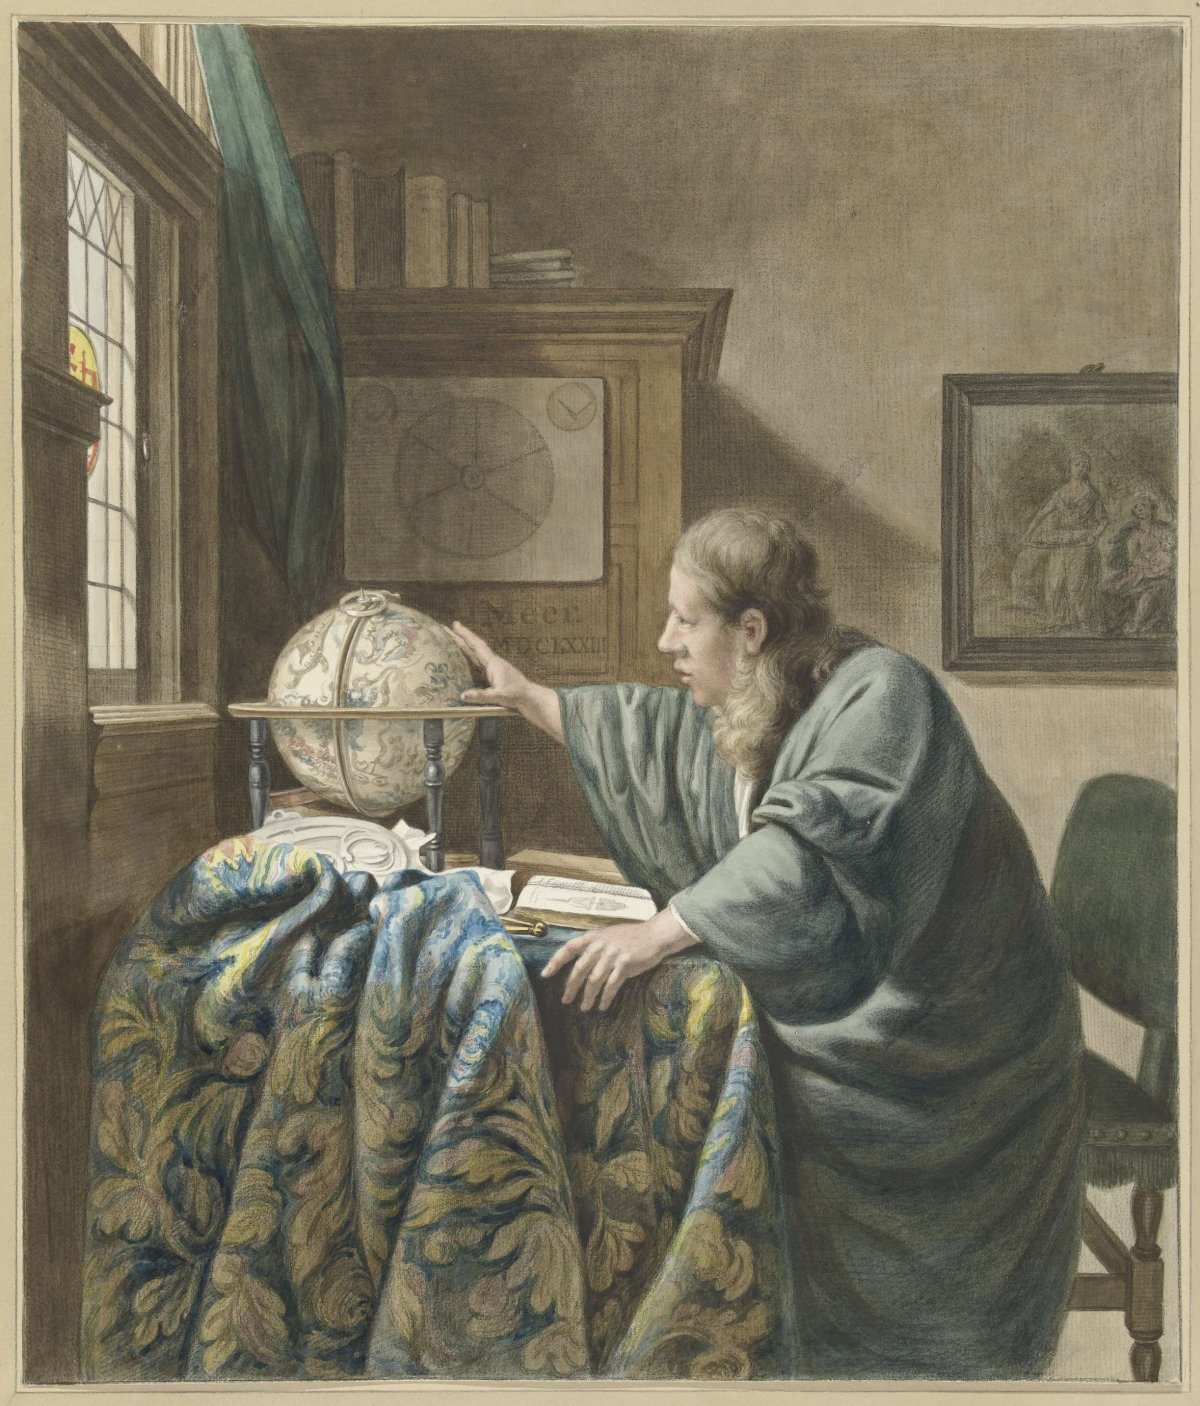 The astronomer, Abraham Delfos, 1794